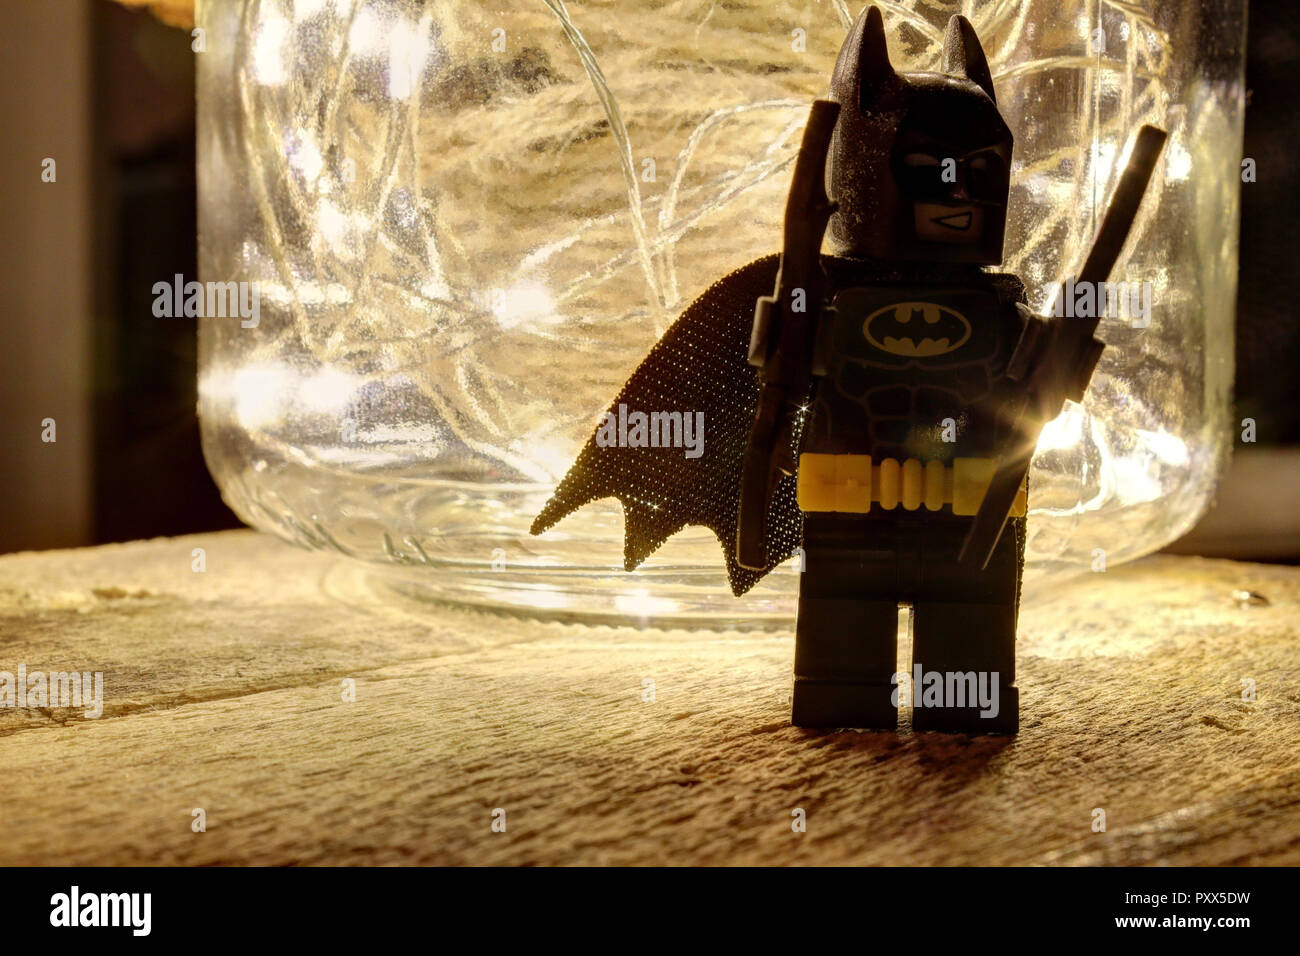 Une nature morte composition avec LEGO Batman, un bocal en verre avec un couvercle en cuir rempli d'une corde de chanvre et quelques voyants lumineux qui brille sur un bois brut Banque D'Images